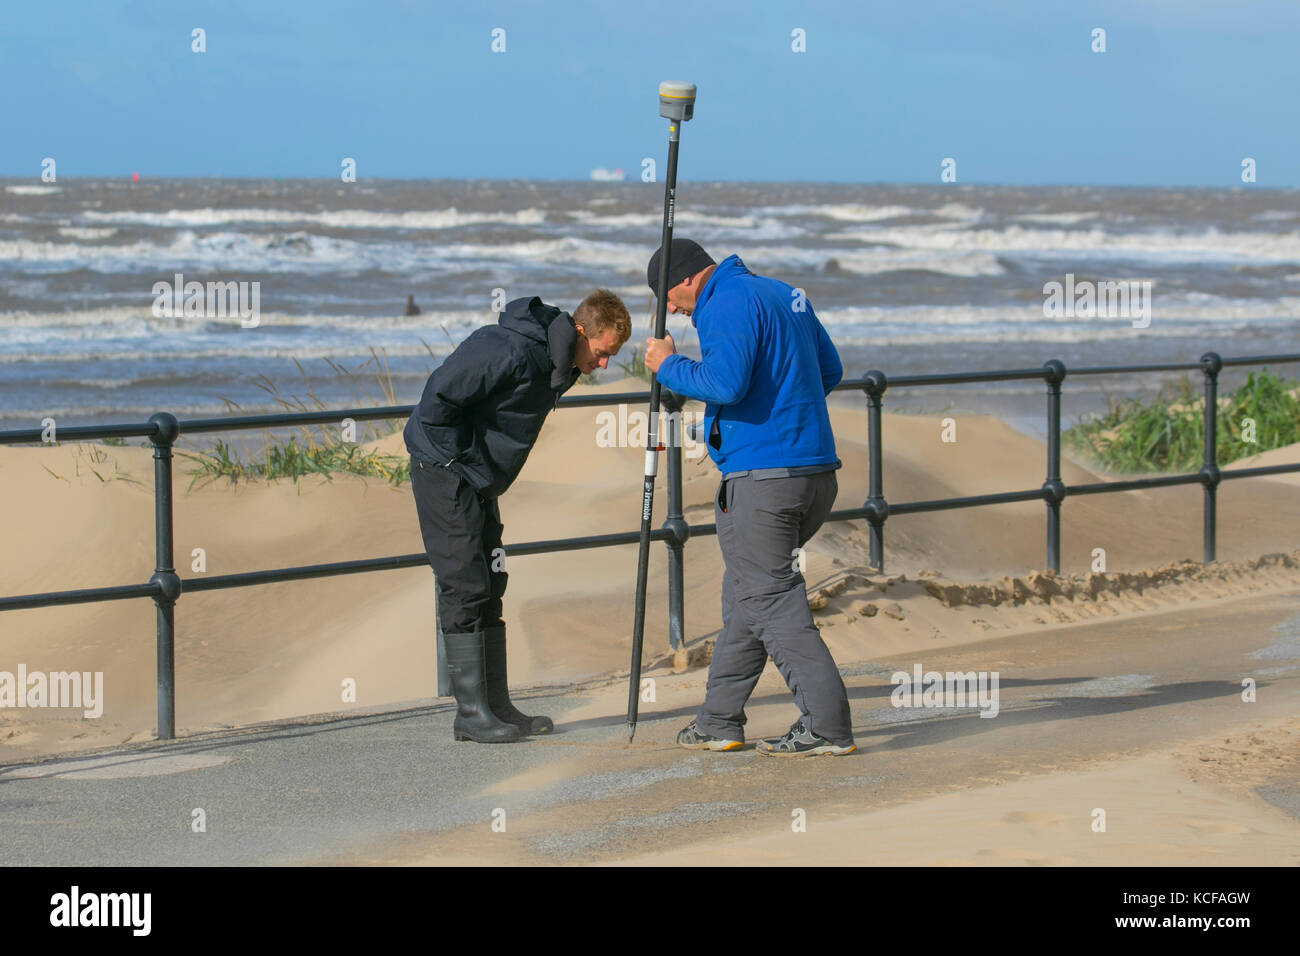 Strandbefragung durch Mitarbeiter des Sefton council, die Leica GPS-Vermessungsgeräte als Teil der Küstenüberwachung verwenden, die alle 6 Monate an einem ausgedehnten Sandstrand durchgeführt wird, um Erosion und Akkretion zu überwachen. Stockfoto